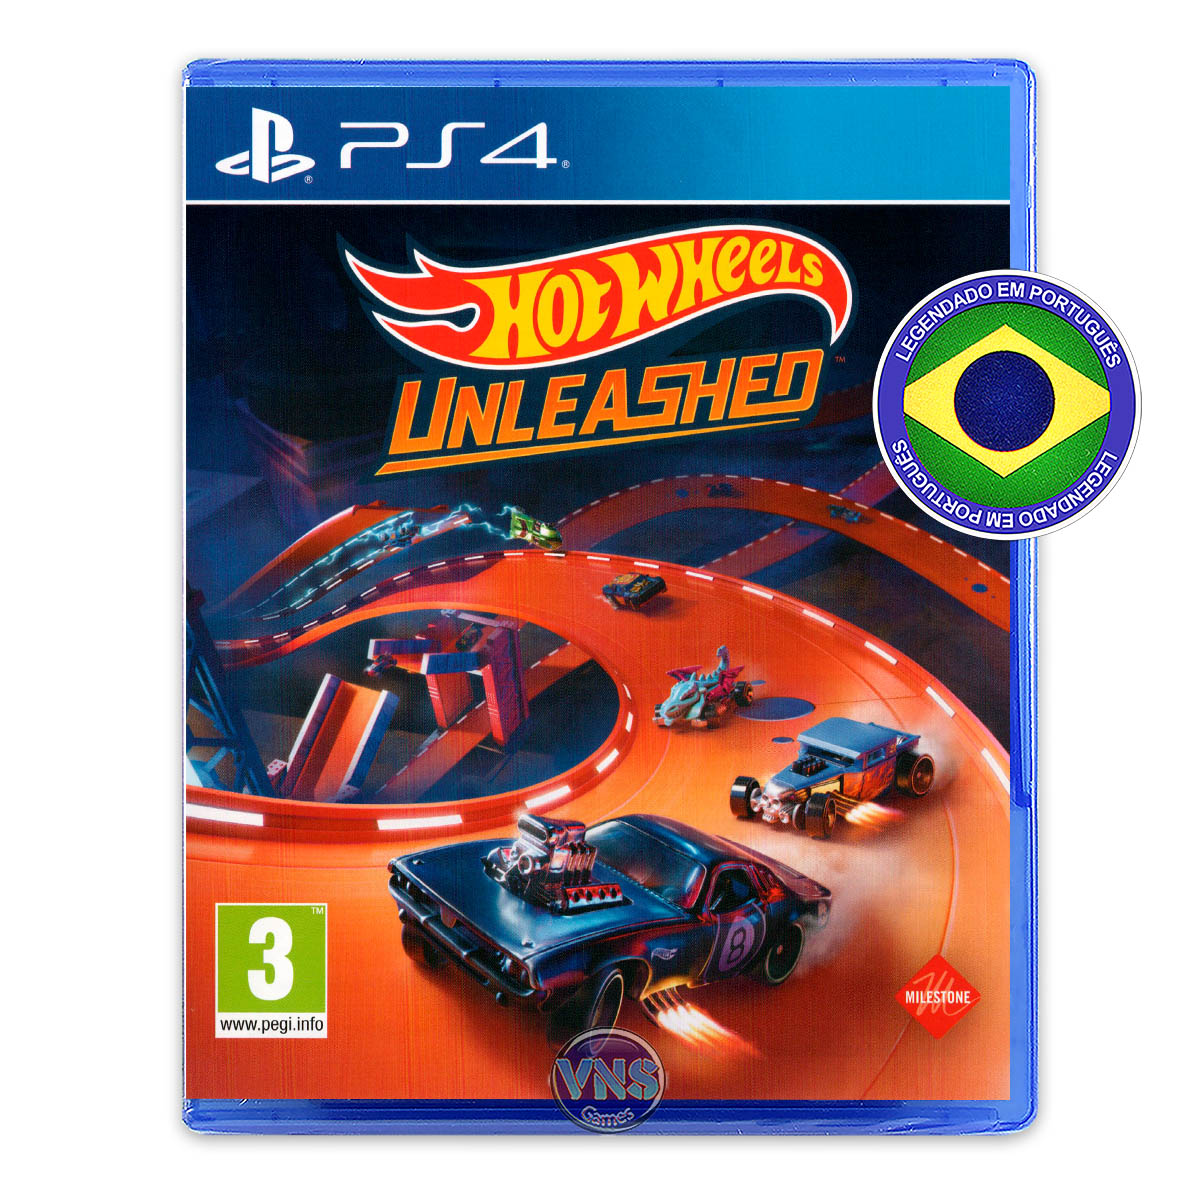 Hot Wheels Unleashed - PS4 - VNS Games - Seu próximo jogo está aqui!